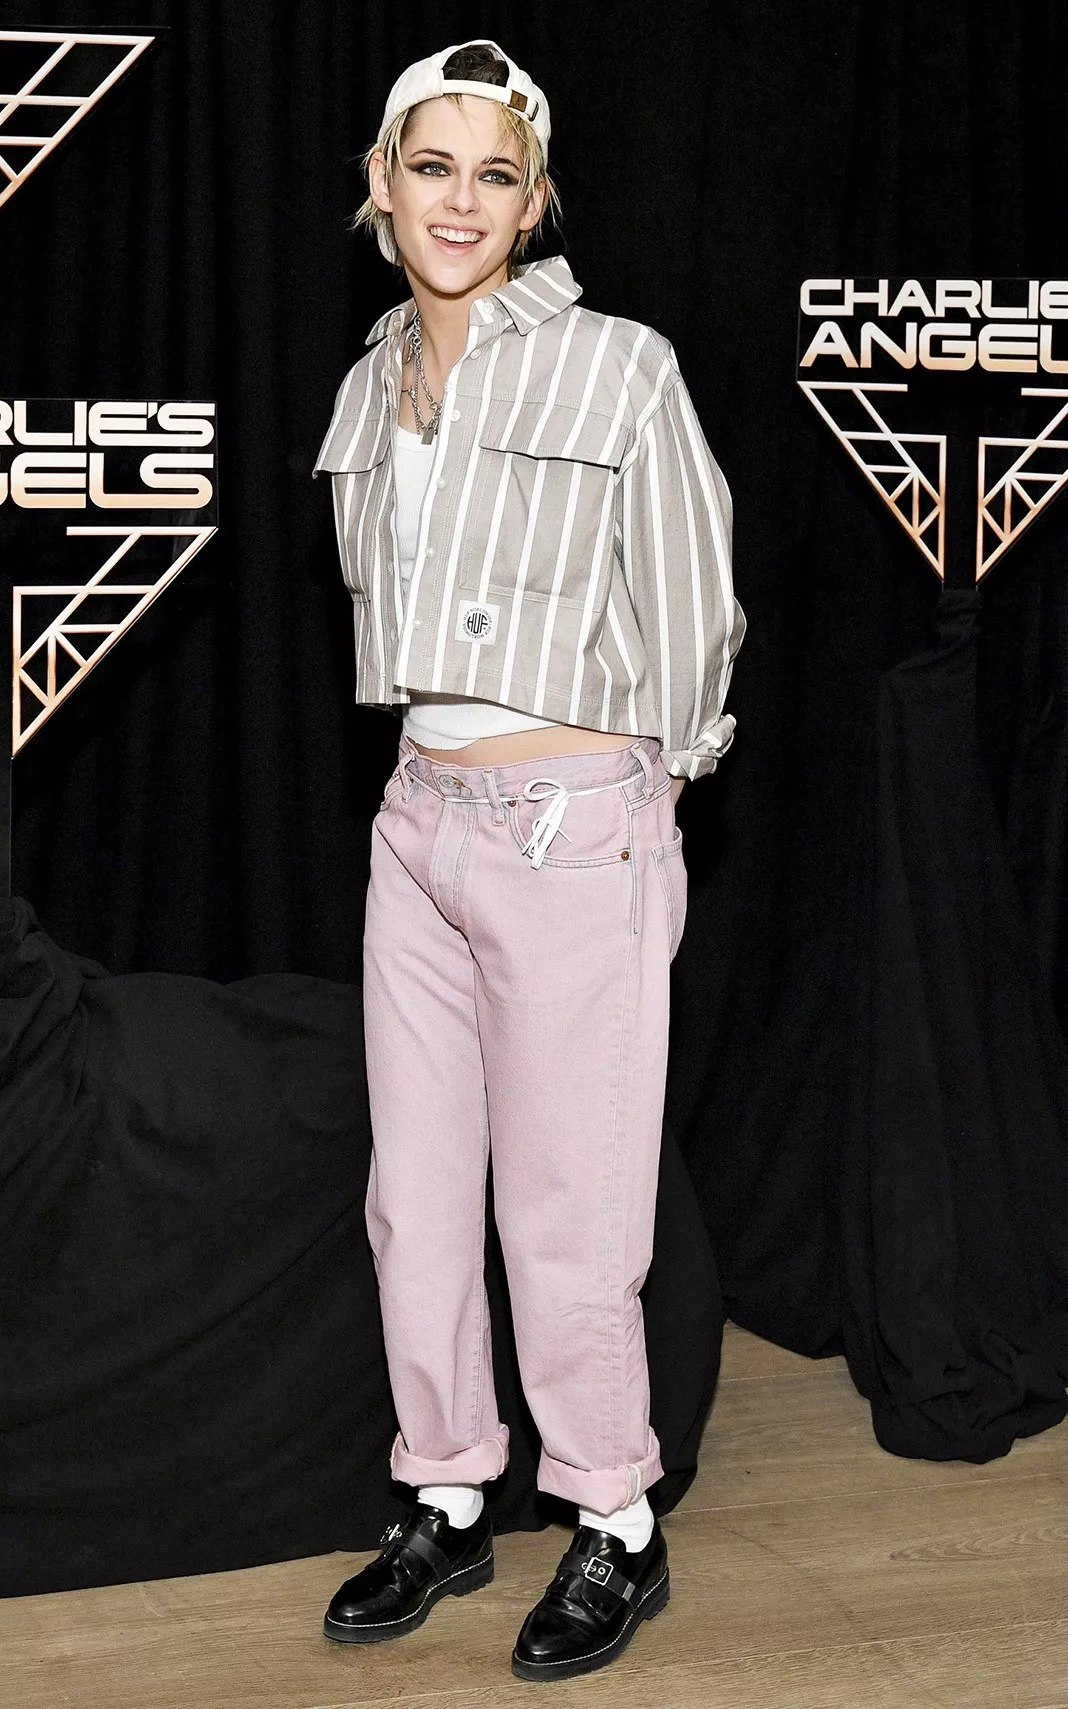 Кристен Стюарт на фотоколле к фильму «Ангелы Чарли» в Нью-Йорке, 7 ноября 2019 г.